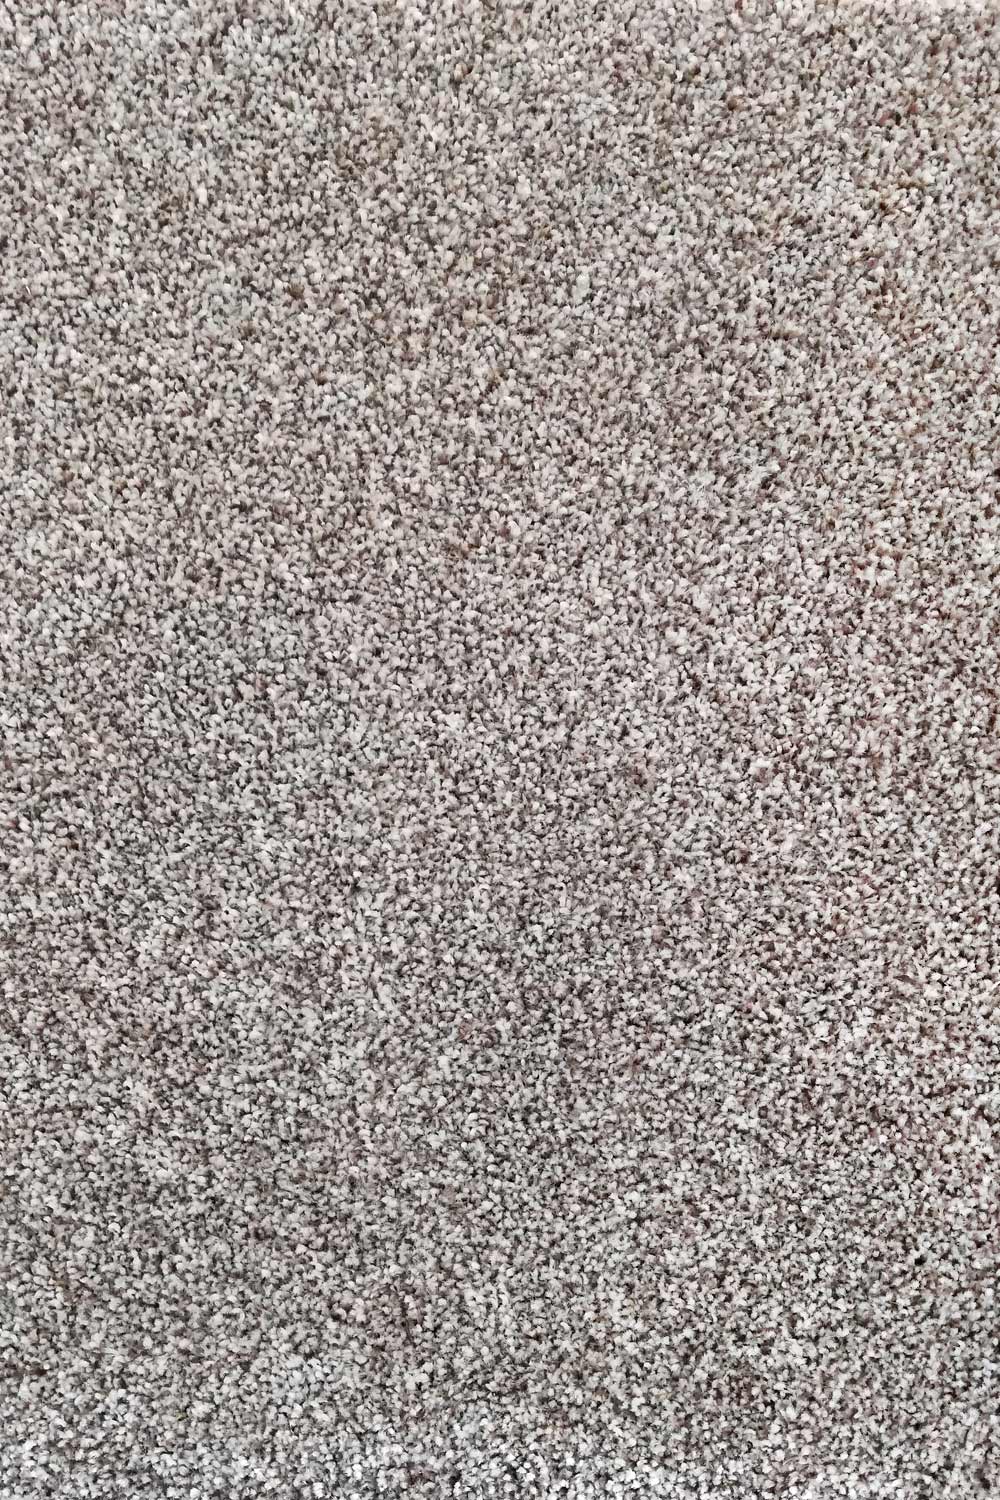 Metrážny koberec Dalesman 62 400 cm